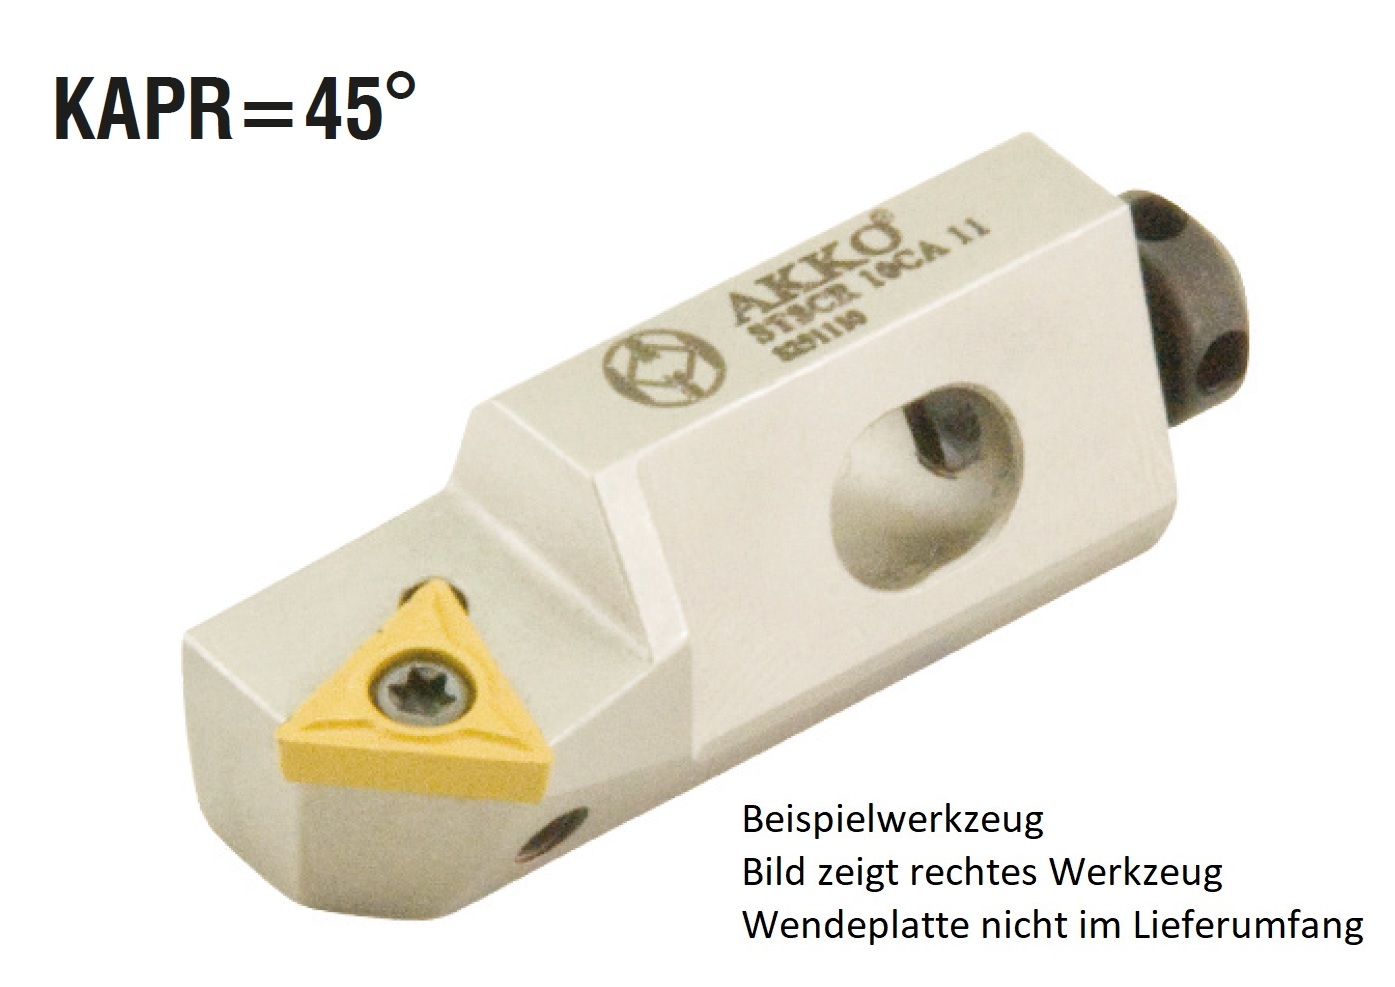 AKKO-Kurzdrehhalter für ISO-WSP TC.T 110204
links, 45° Anstellwinkel